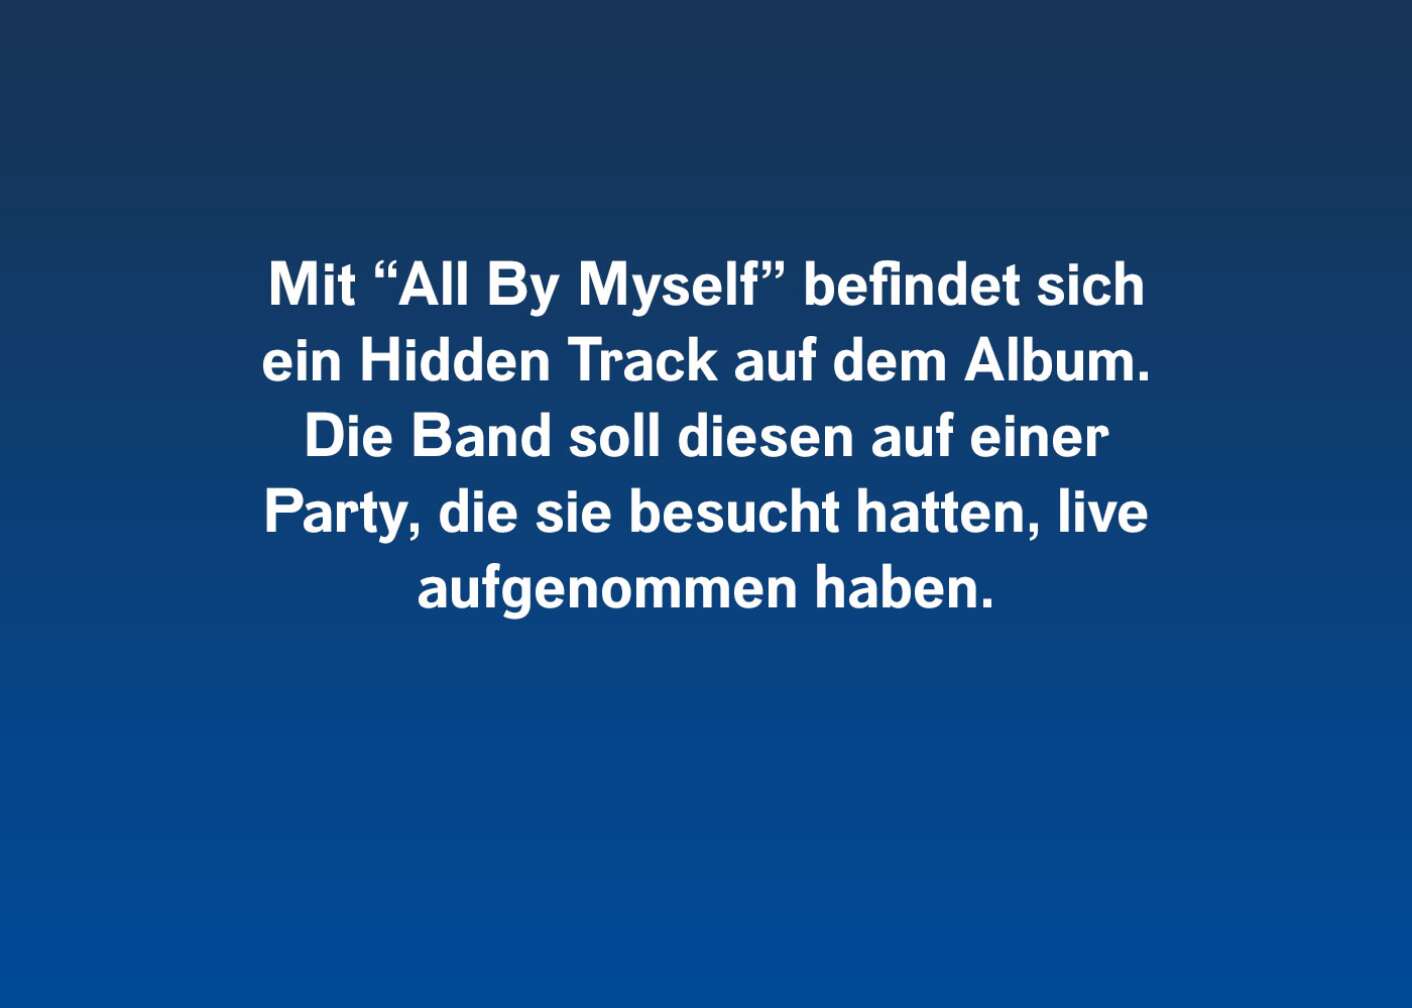 Mit "All By Myself" befindet sich ein Hidden Track auf dem Album, Die Band soll diesen auf einer Party, die sie besucht hatten, live aufgenommen haben.